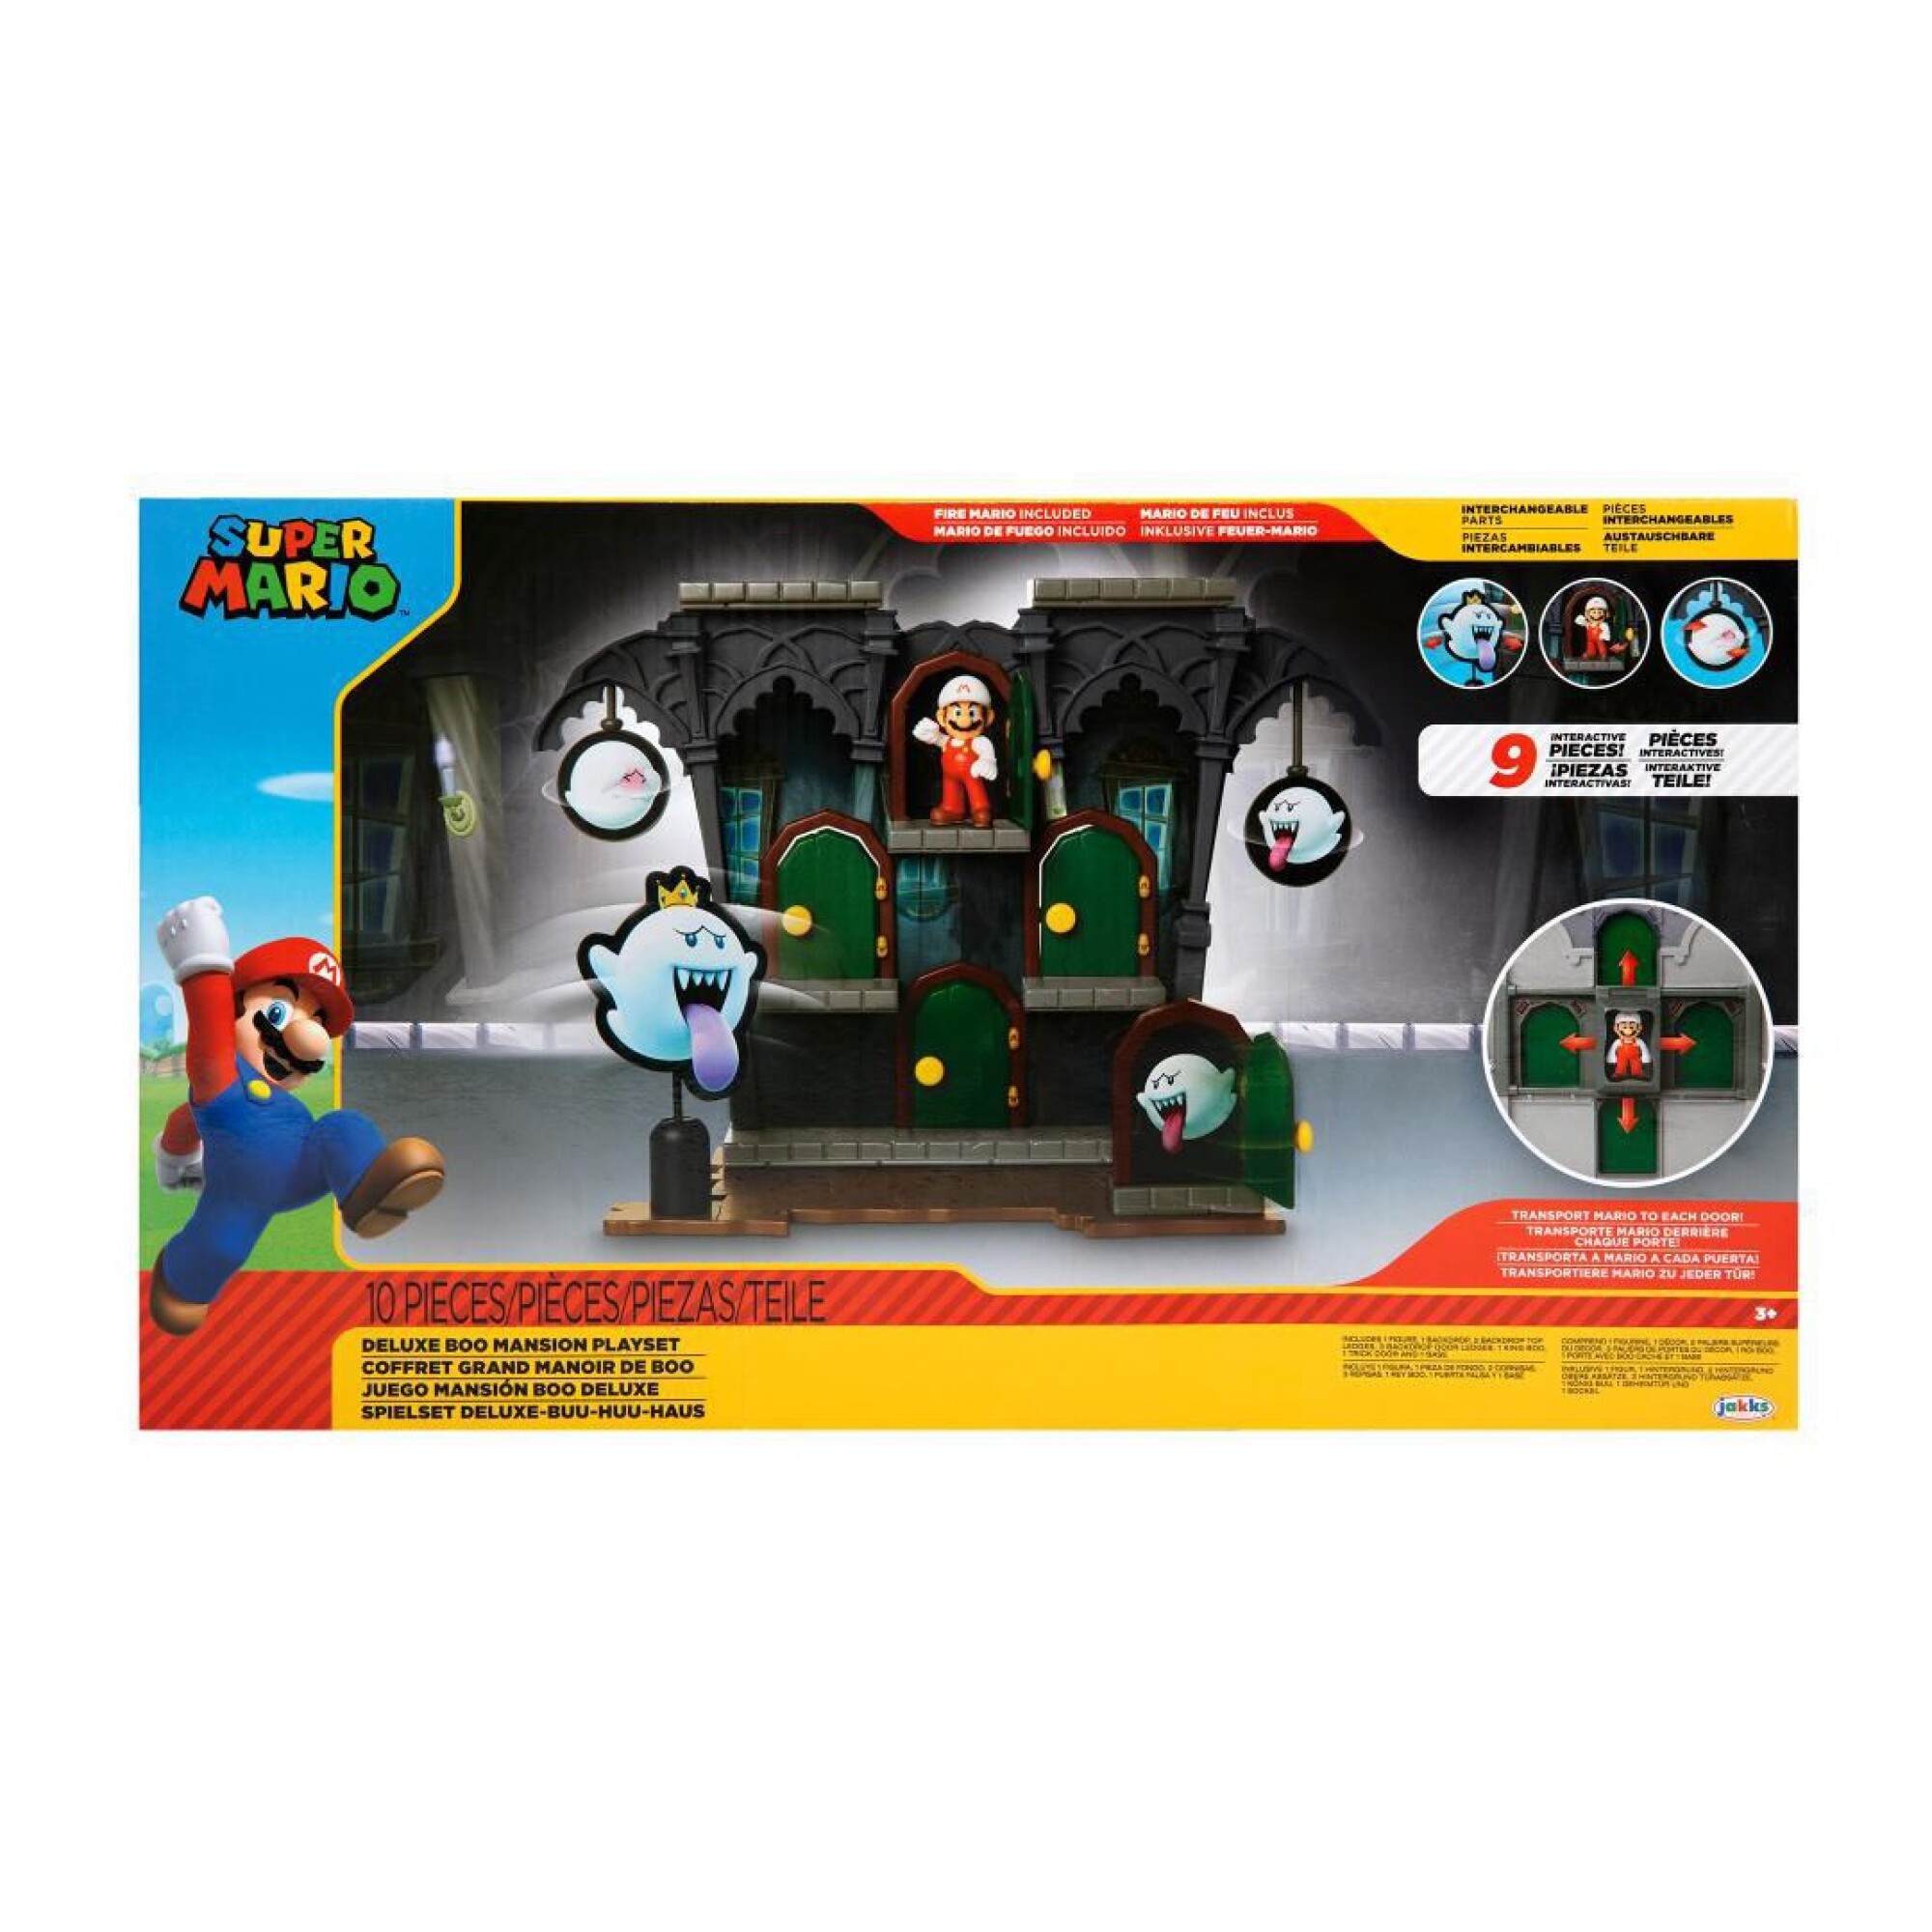 Peluche Mario Bros de Super Mario ™ Nintendo - ACCESORIOS - Niño - Niños 